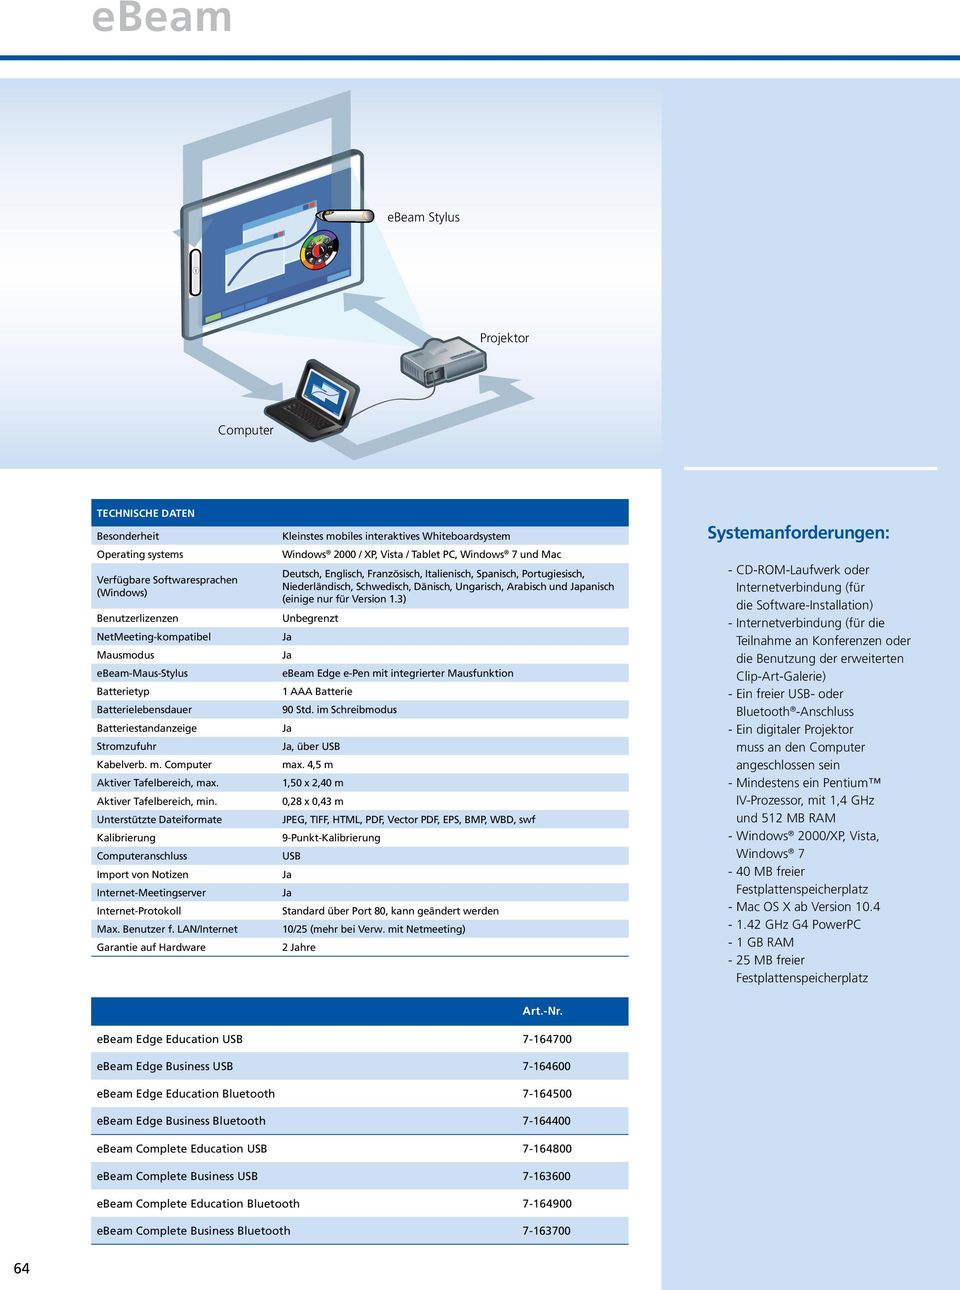 Unterstützte Dateiformate Kalibrierung Computeranschluss Import von Notizen Internet-Meetingserver Internet-Protokoll Max. Benutzer f.